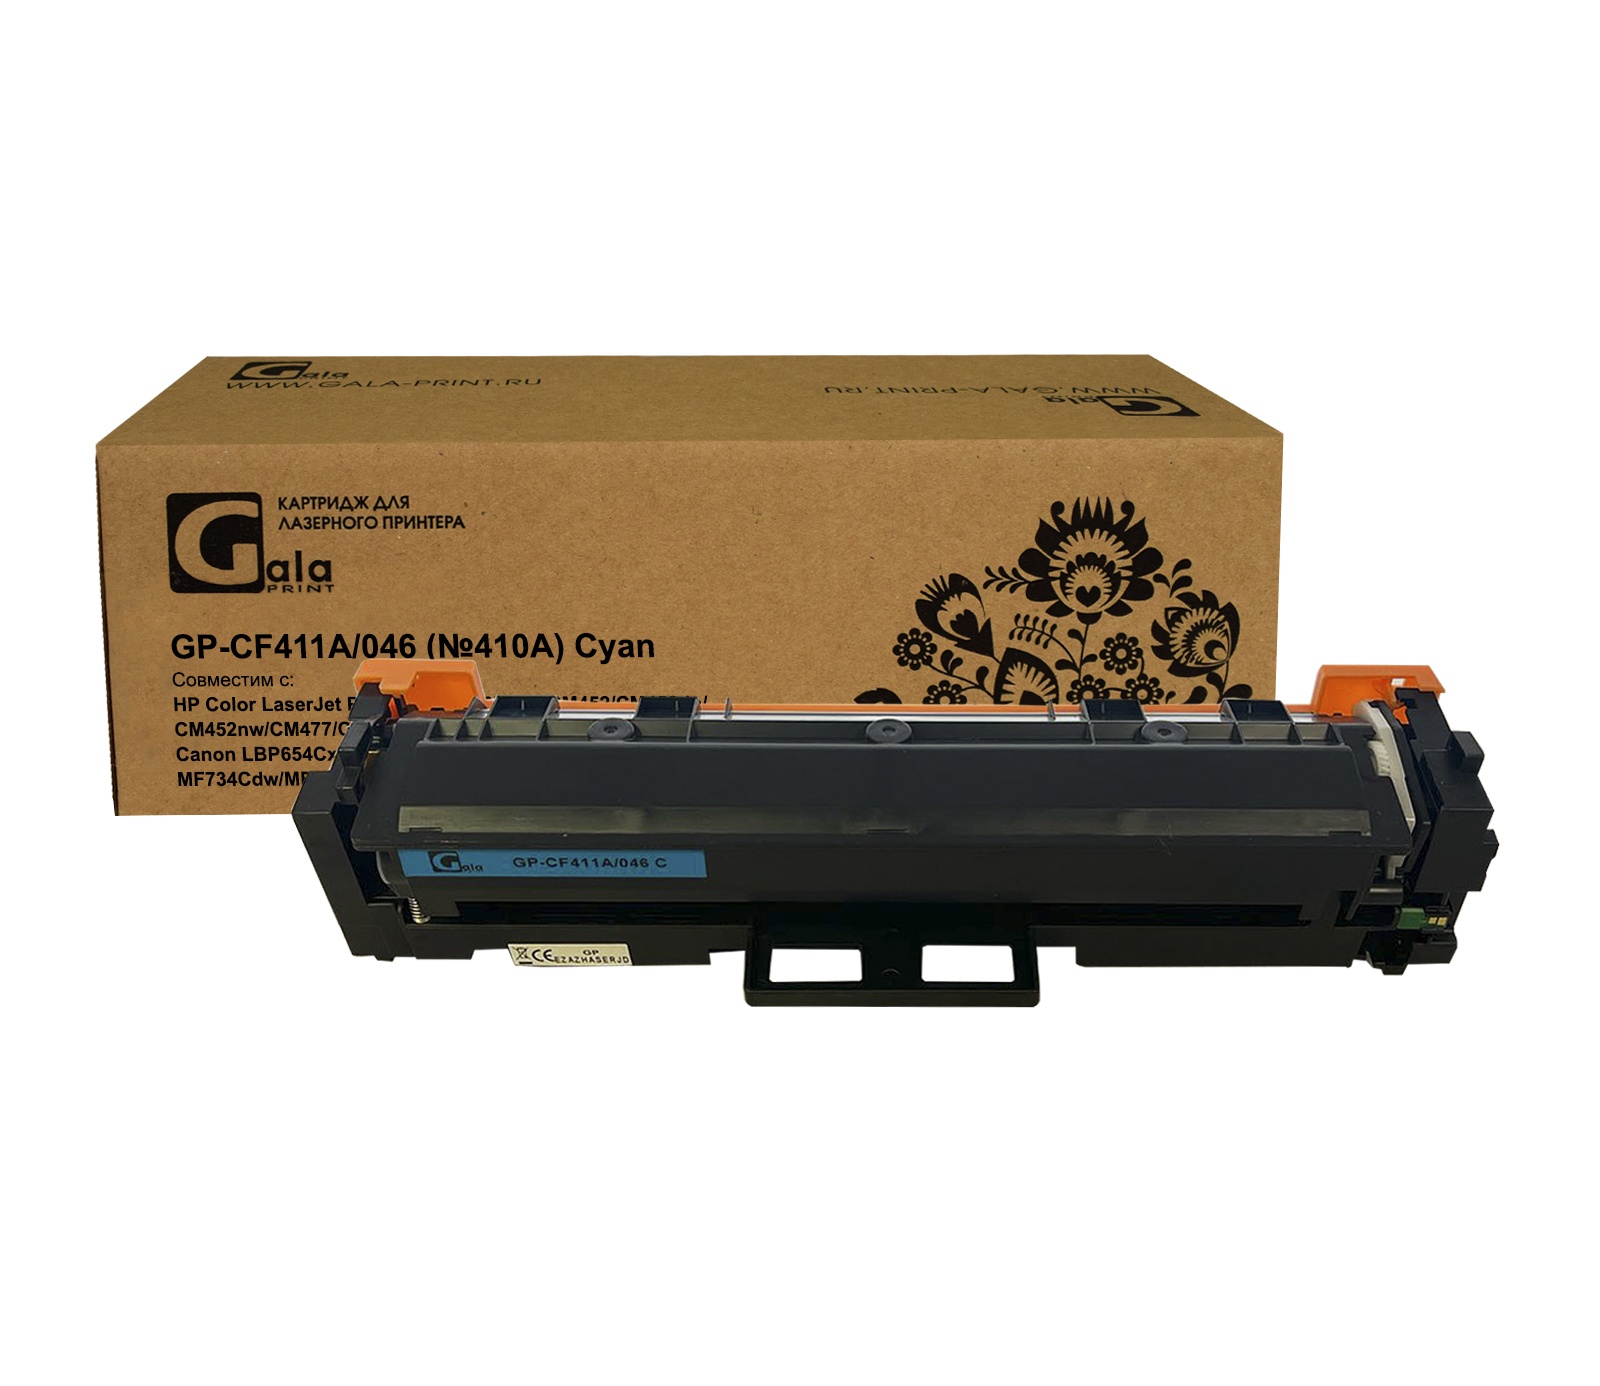 Картридж GP-CF411A №410A для принтеров HP LaserJet Pro M477/M452 Cyan 2300 копий GalaPrint